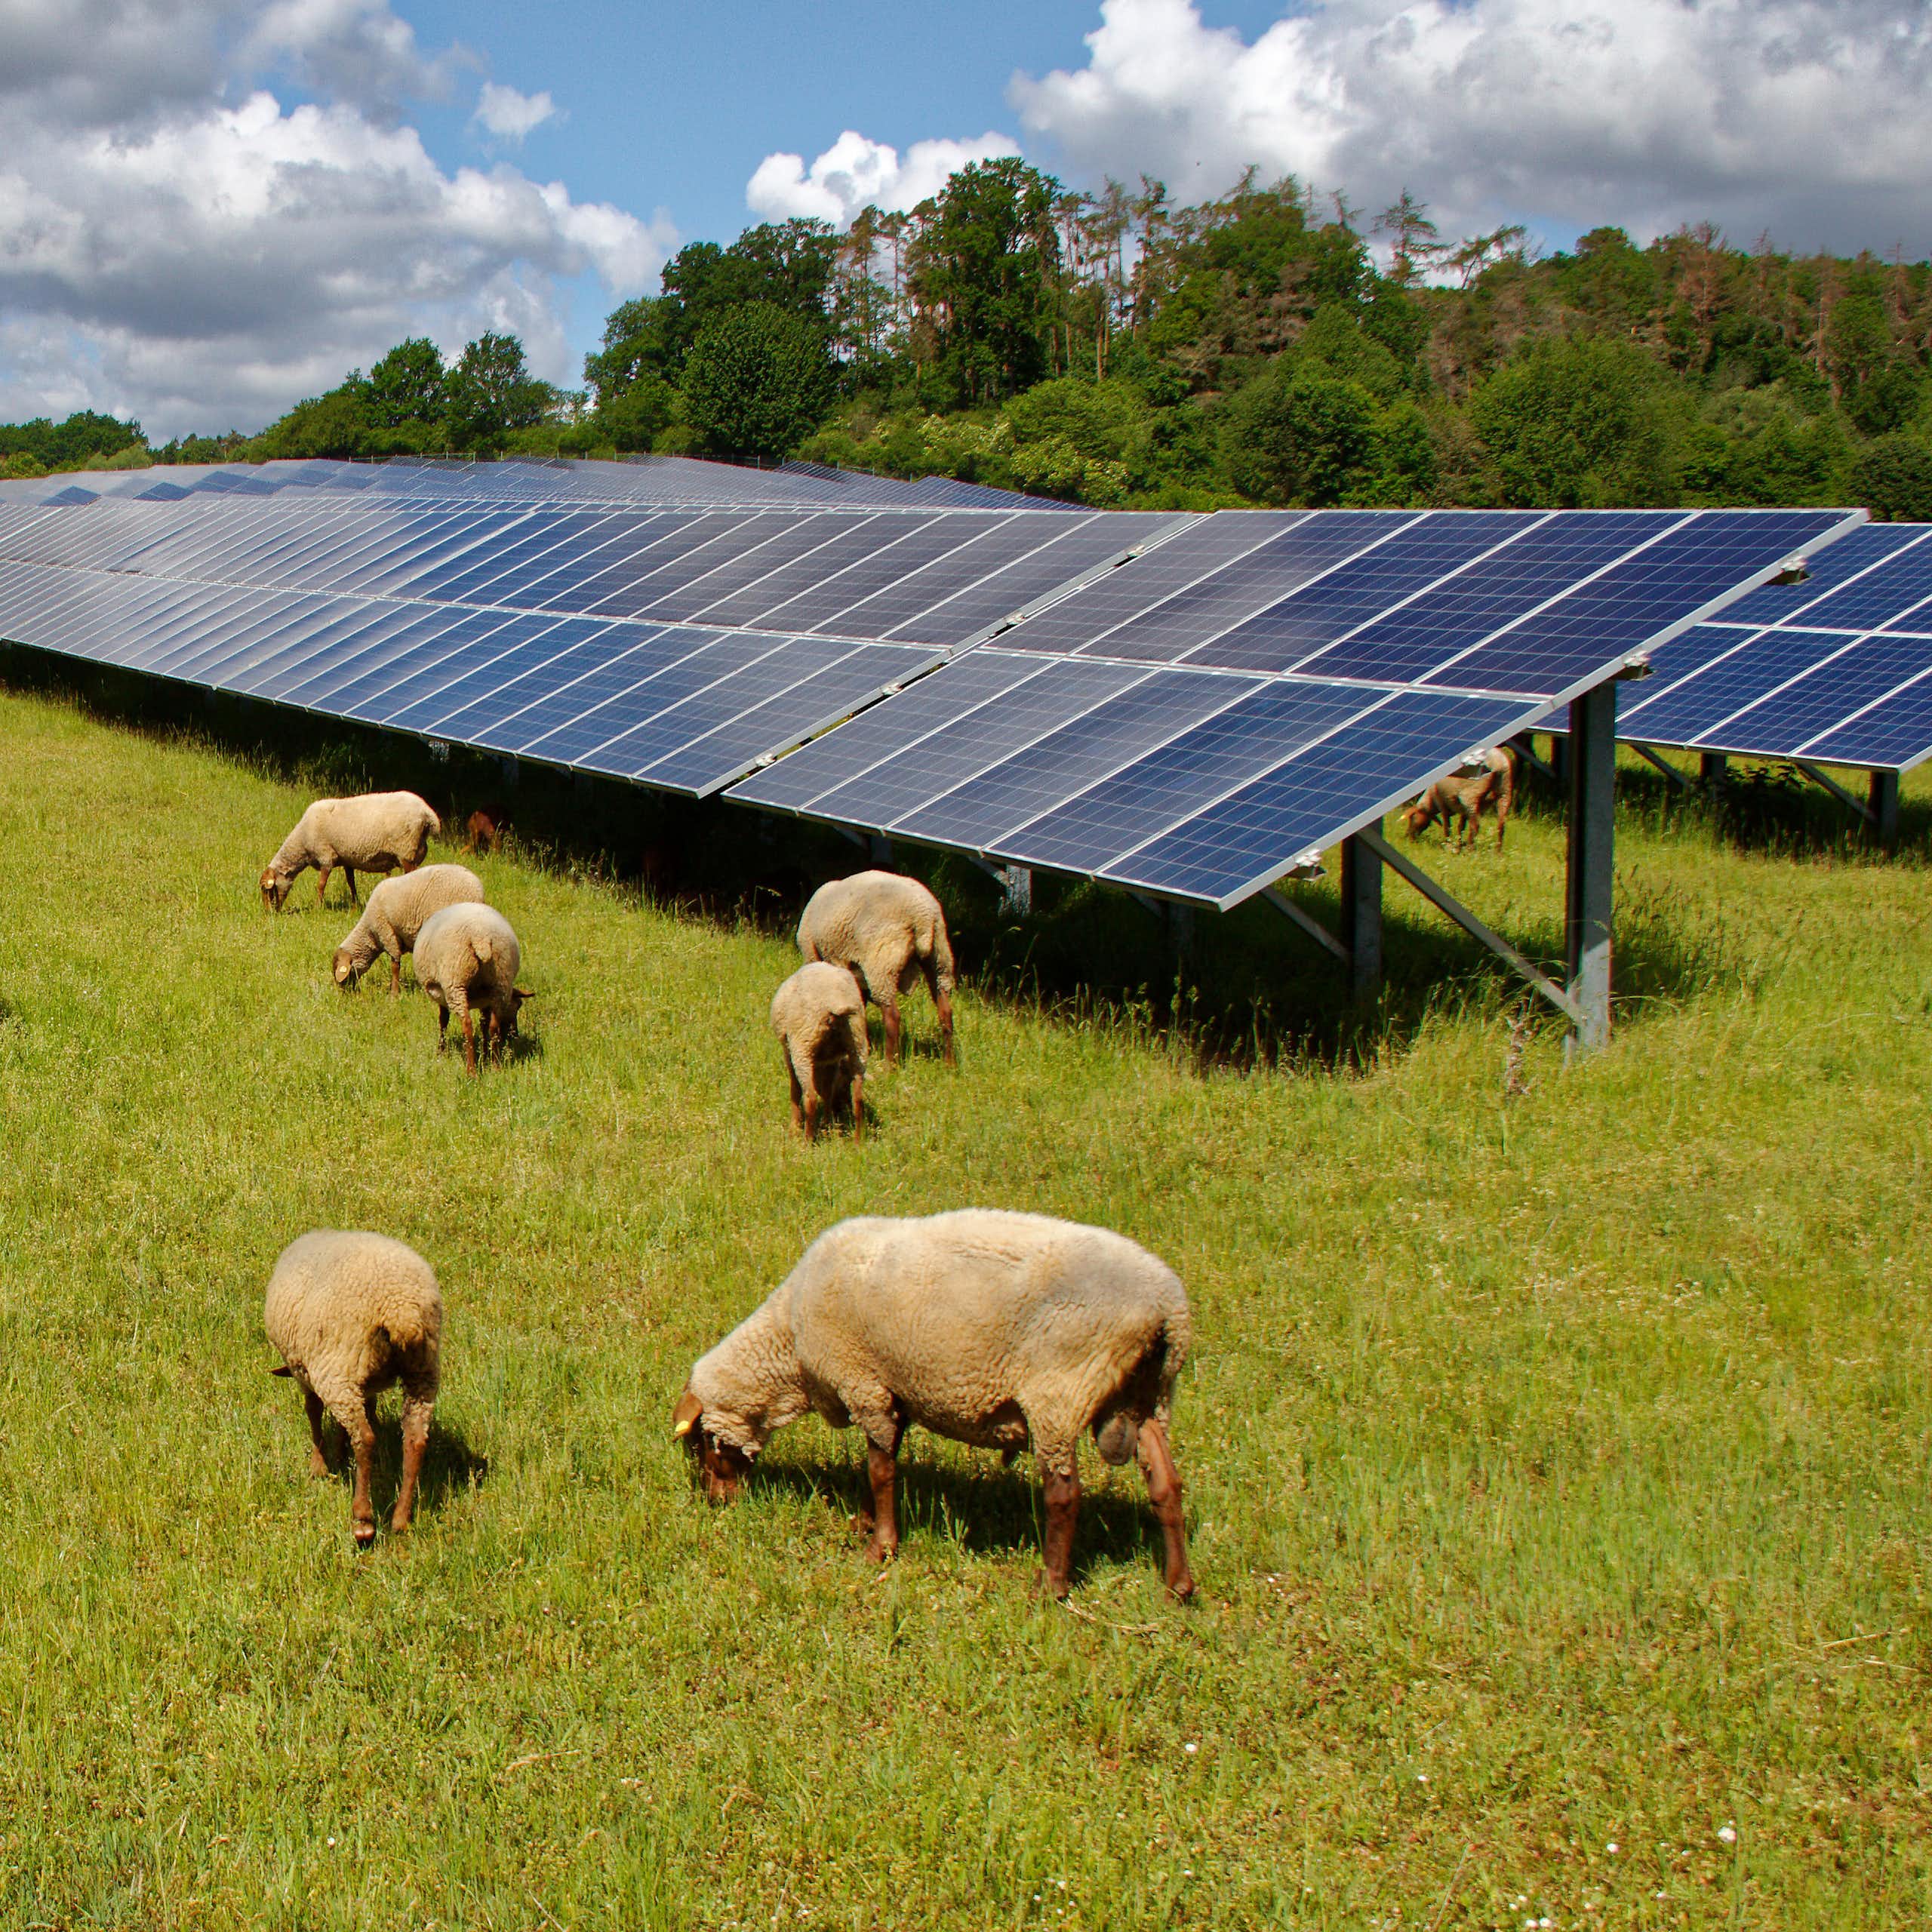 Sheep grazing around solar panels.